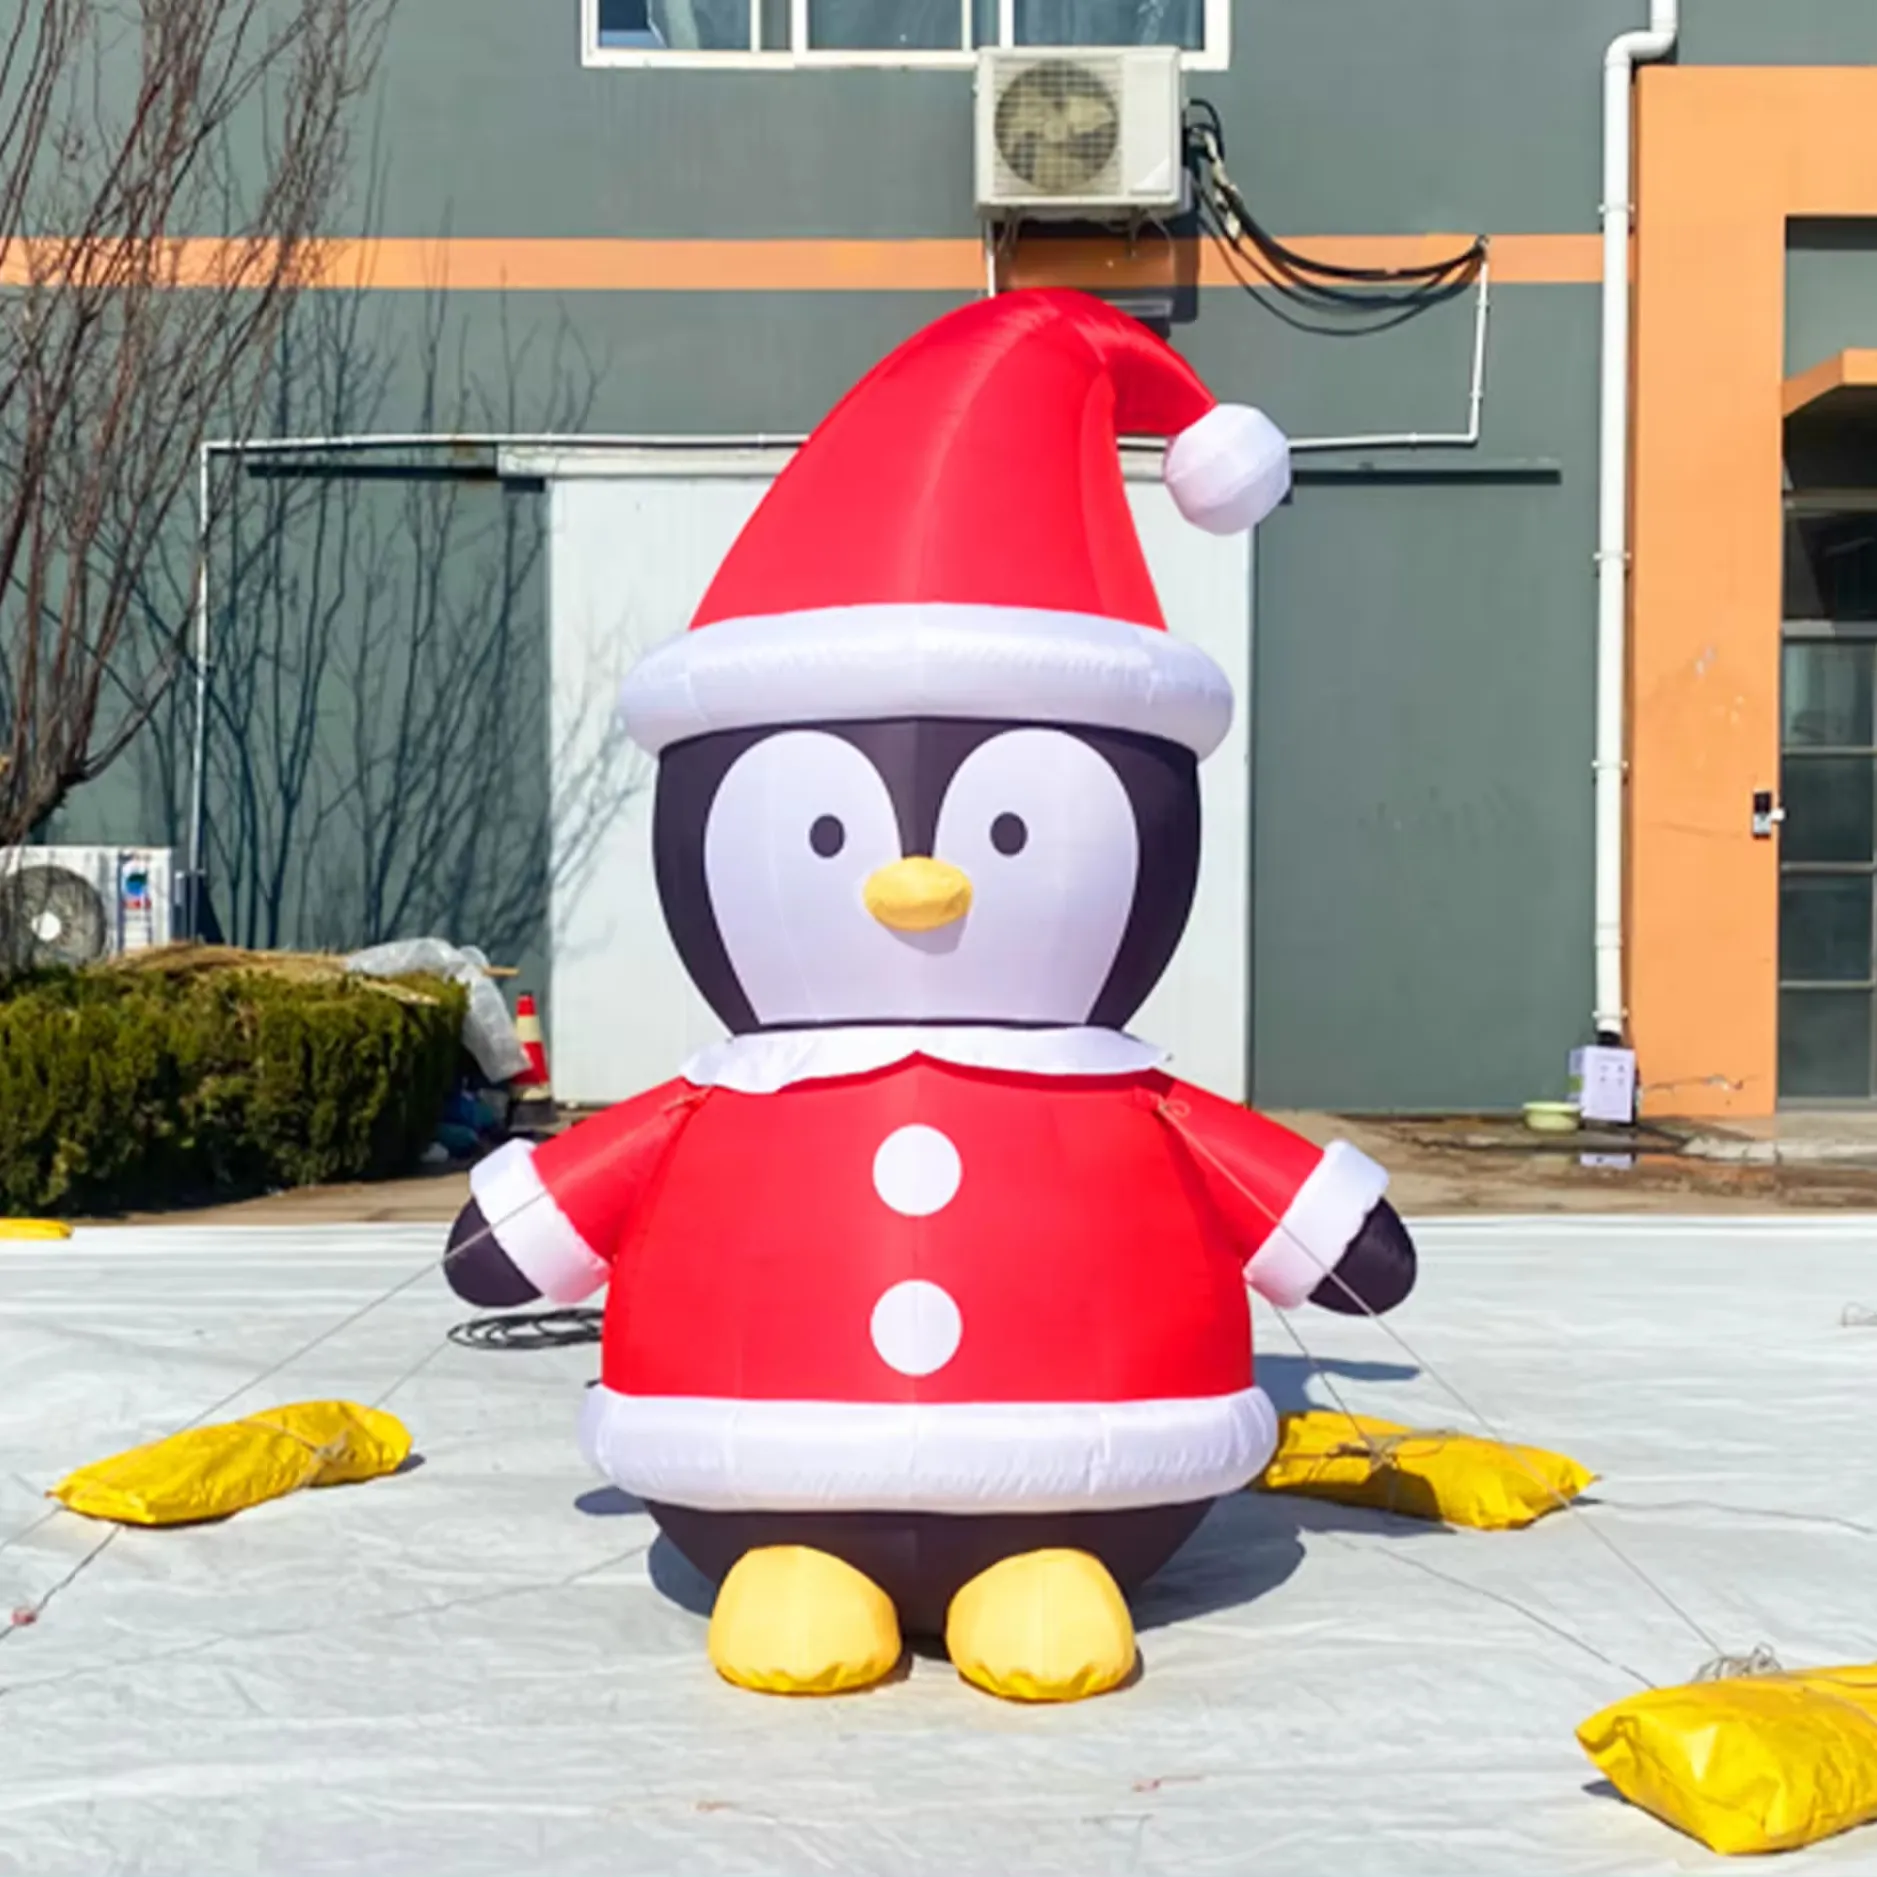 Ukuran dapat disesuaikan Penguin tiup untuk balon Natal dekorasi halaman rumah tinggi 2m/6,6 kaki